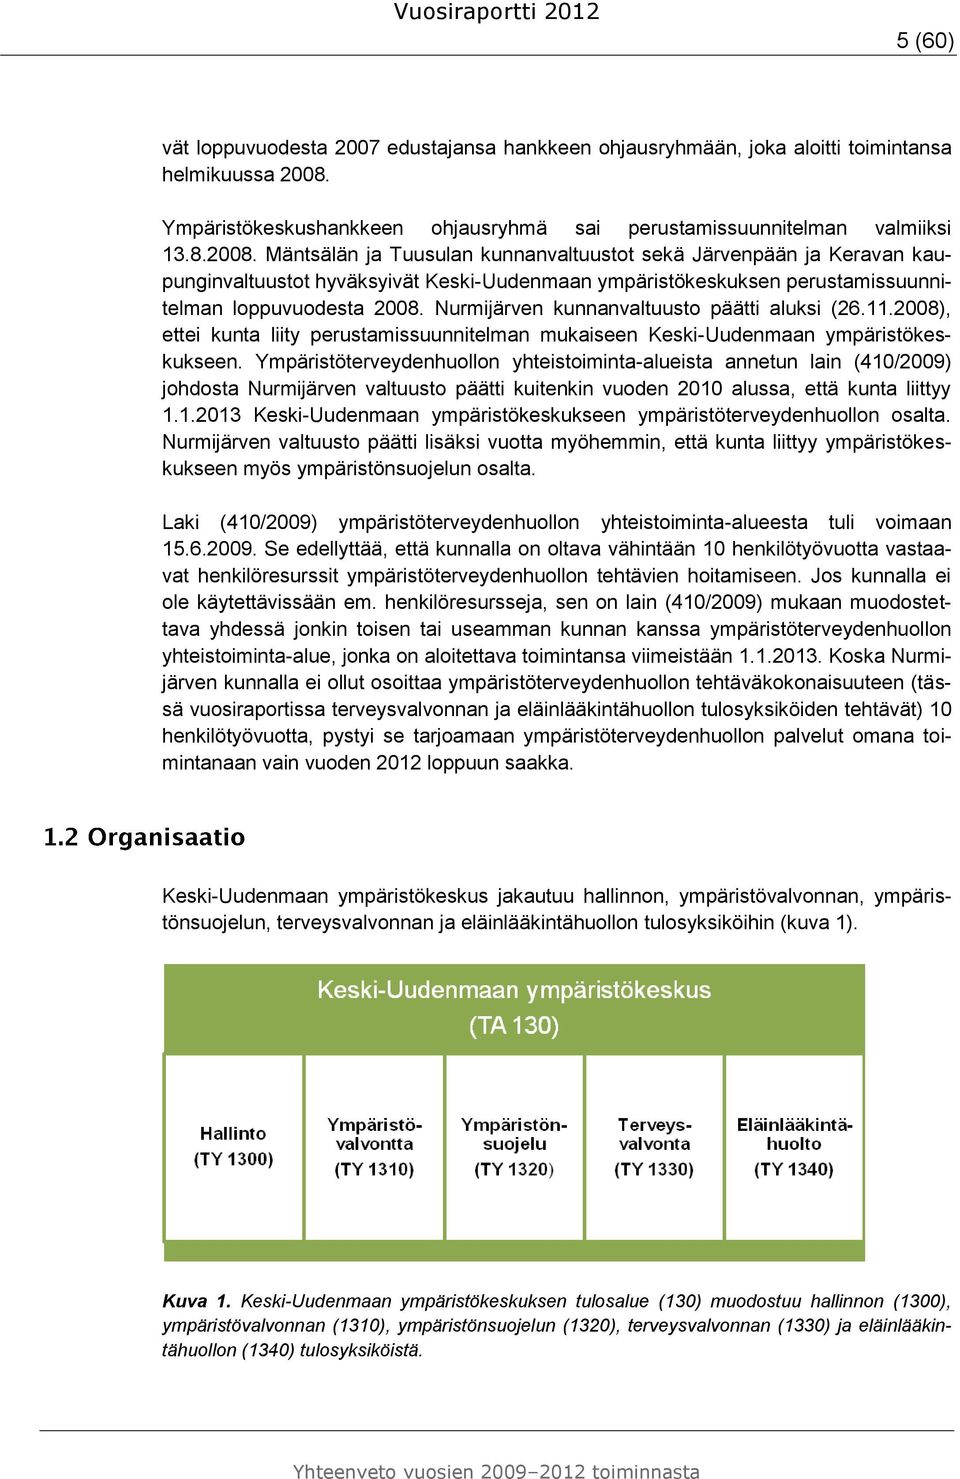 Mäntsälän ja Tuusulan kunnanvaltuustot sekä Järvenpään ja Keravan kaupunginvaltuustot hyväksyivät Keski-Uudenmaan ympäristökeskuksen perustamissuunnitelman loppuvuodesta 2008.